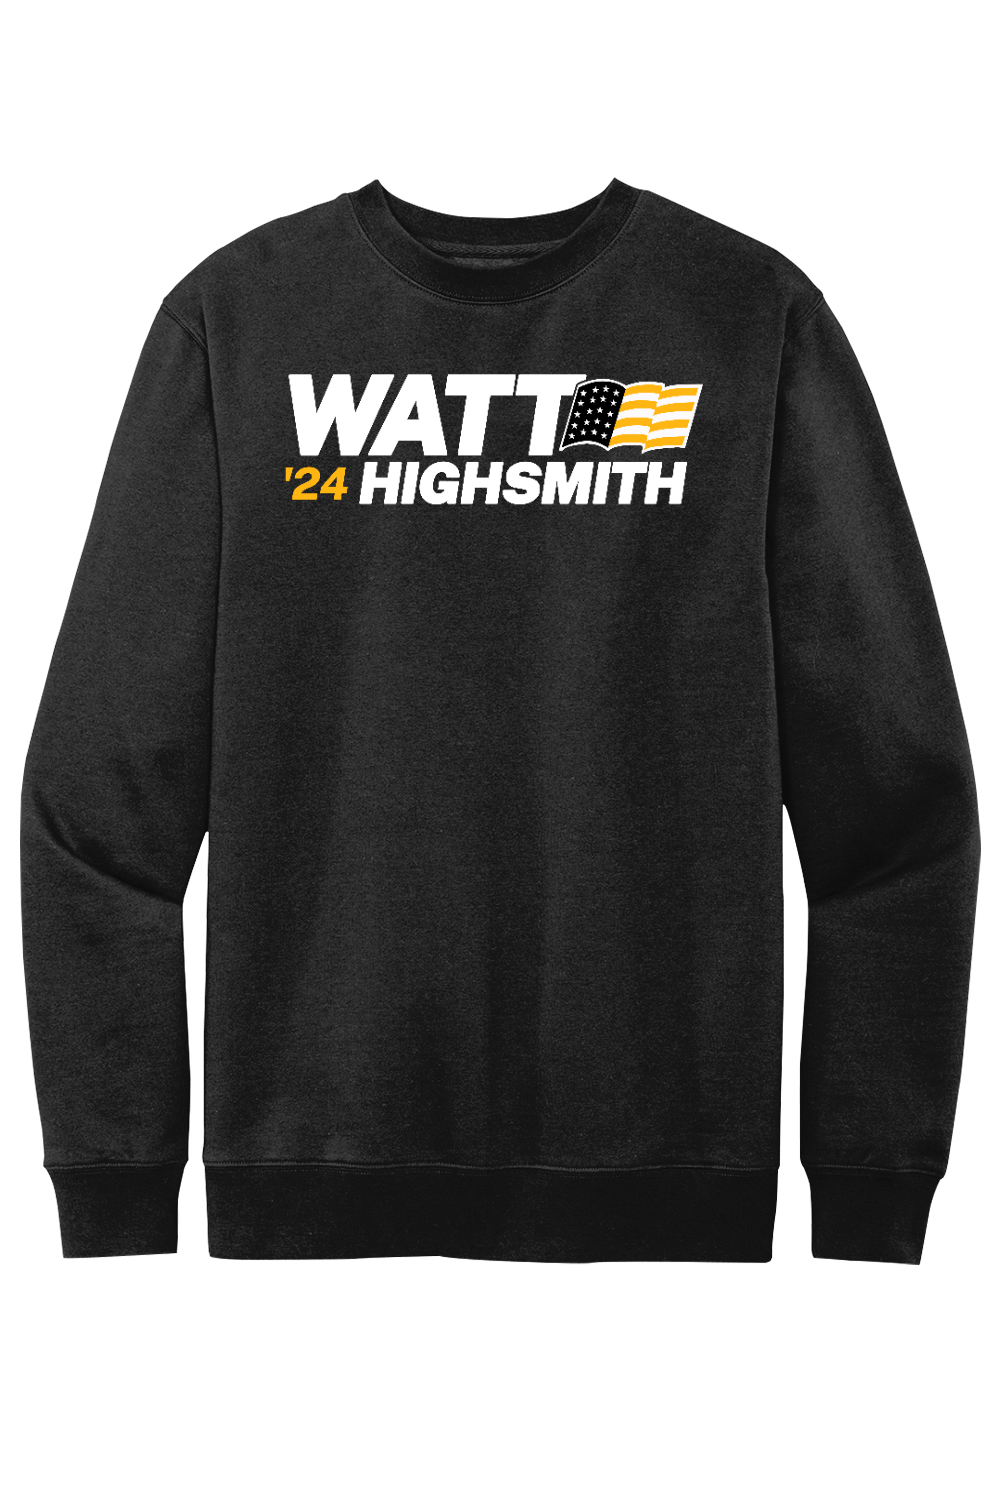 Watt Highsmith '24 - Fleece Crewneck Sweatshirt - Yinzylvania